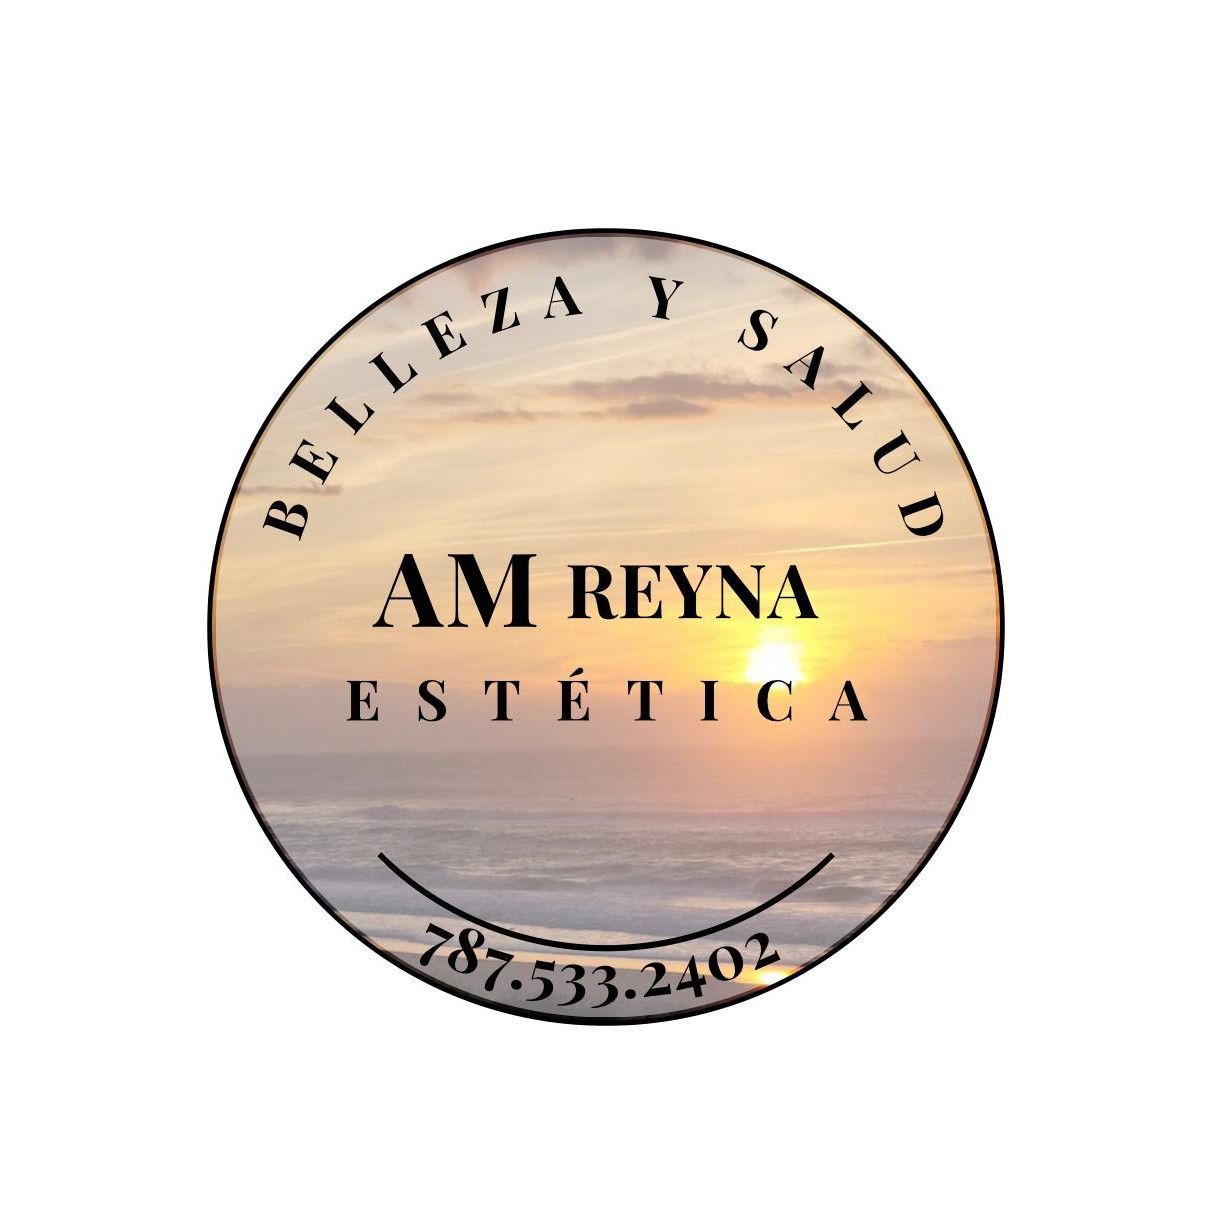 AMReyna Estética y Salud, 73 Avenida Esmeralda, Guaynabo, 00969